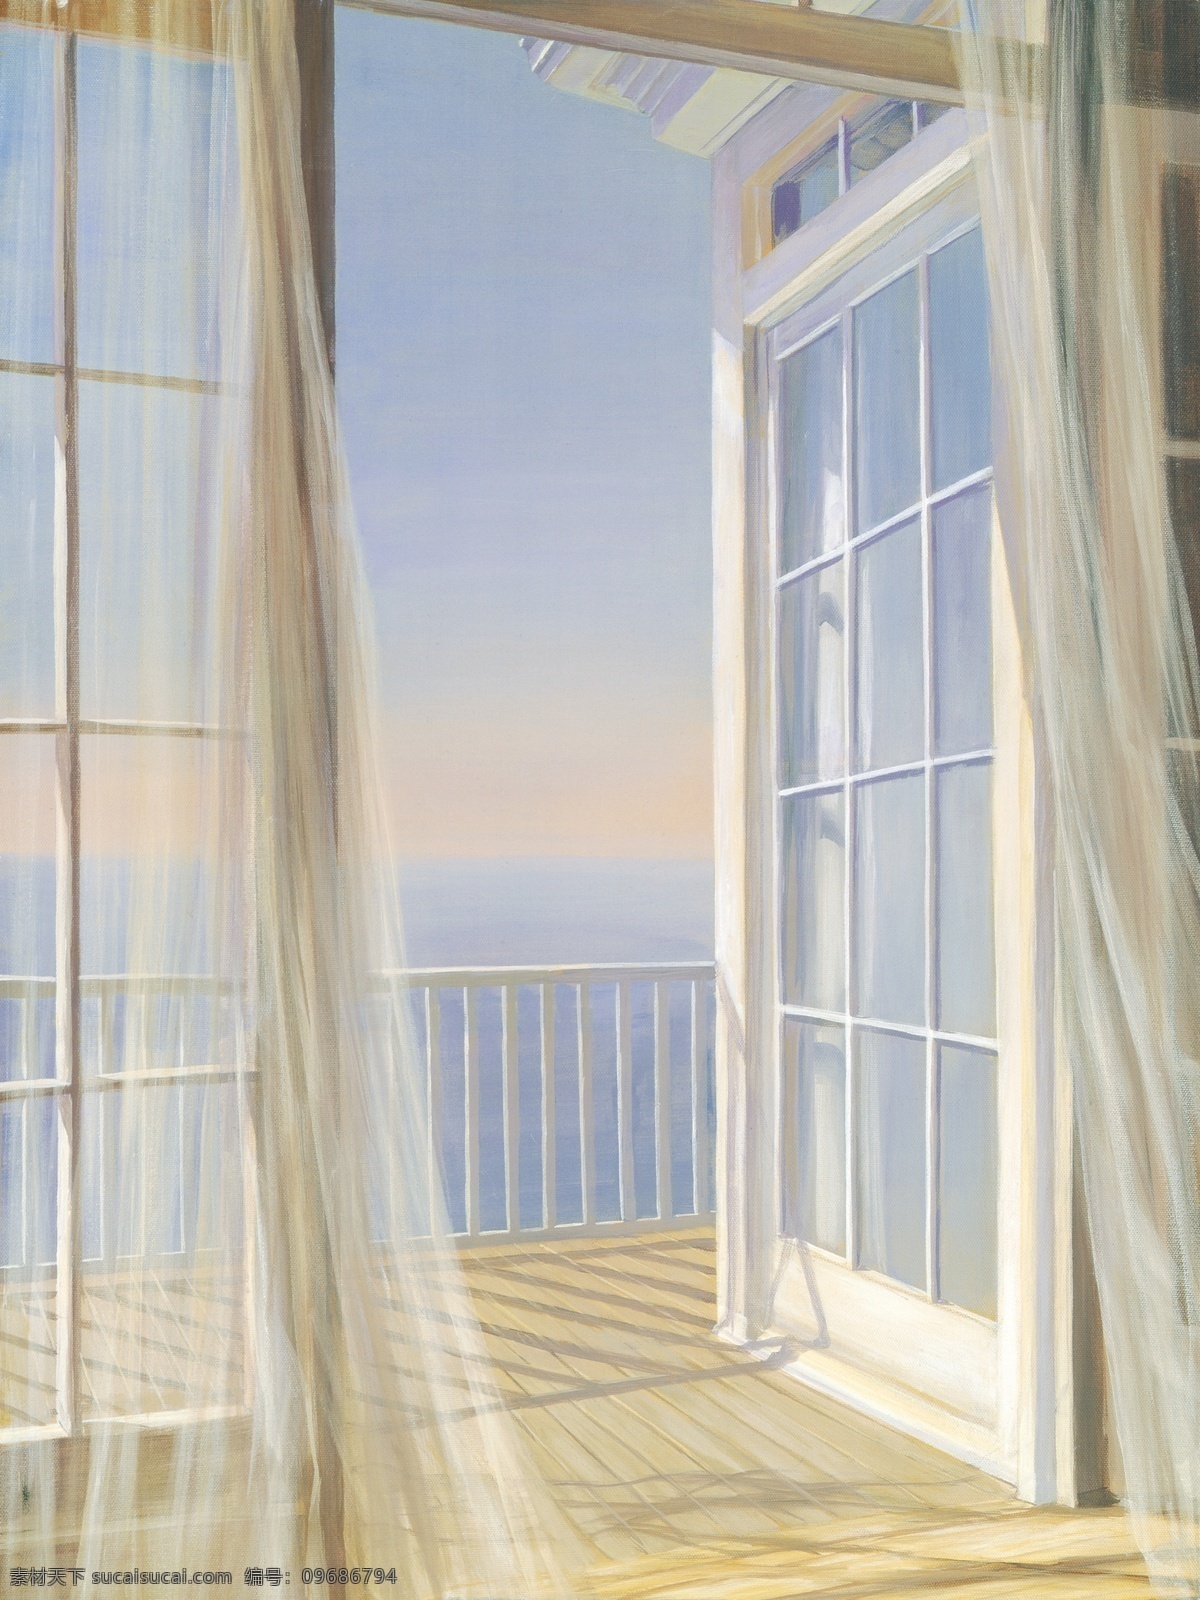 油画风景 海边风景 窗外海景 地中海风景 窗子 窗帘 阳台 绘画书法 文化艺术